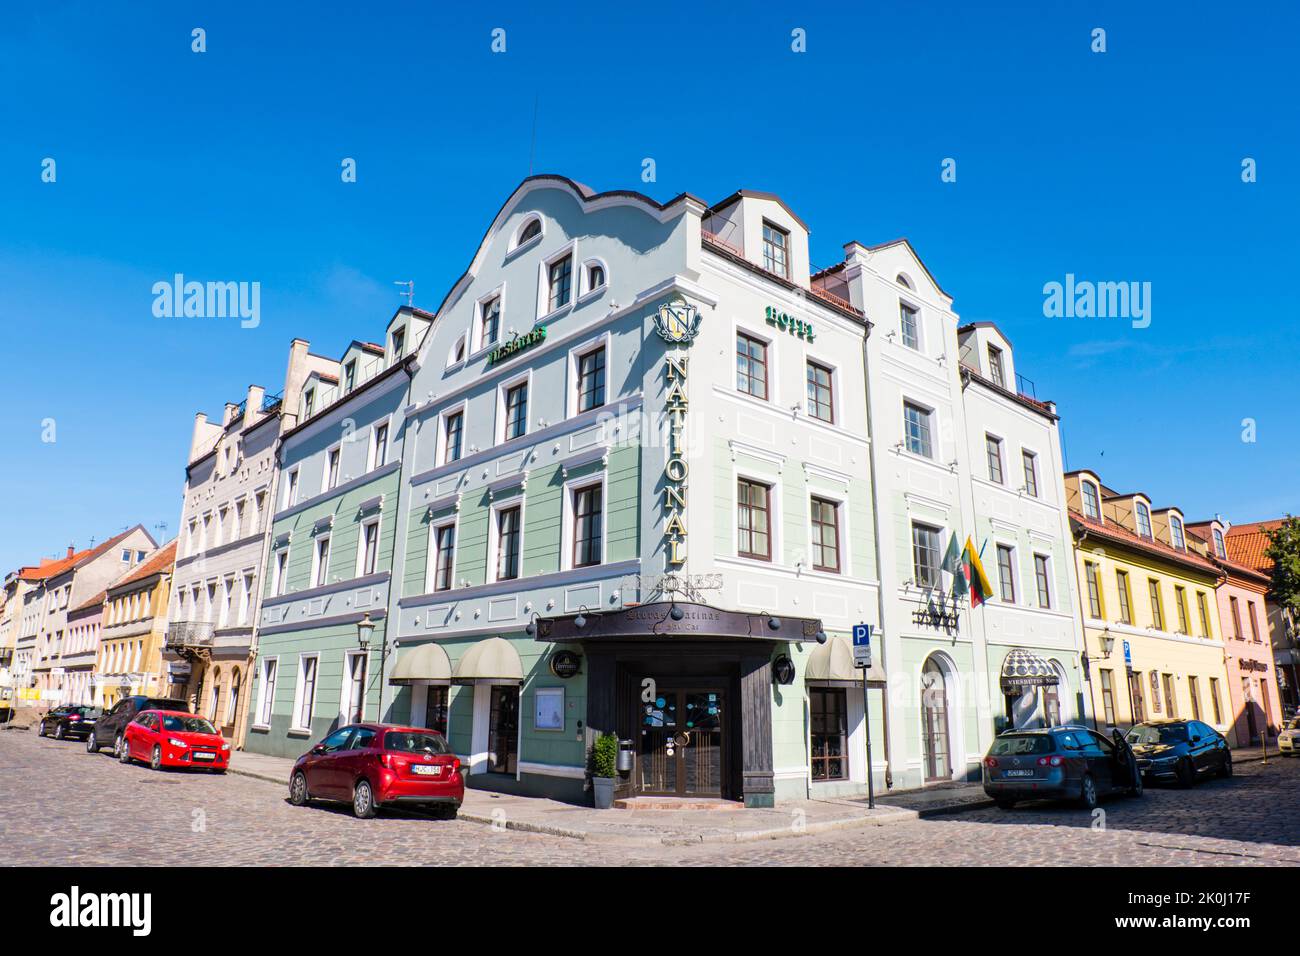 Sveju gatve, vieille ville, Klaipeda, Lituanie Banque D'Images